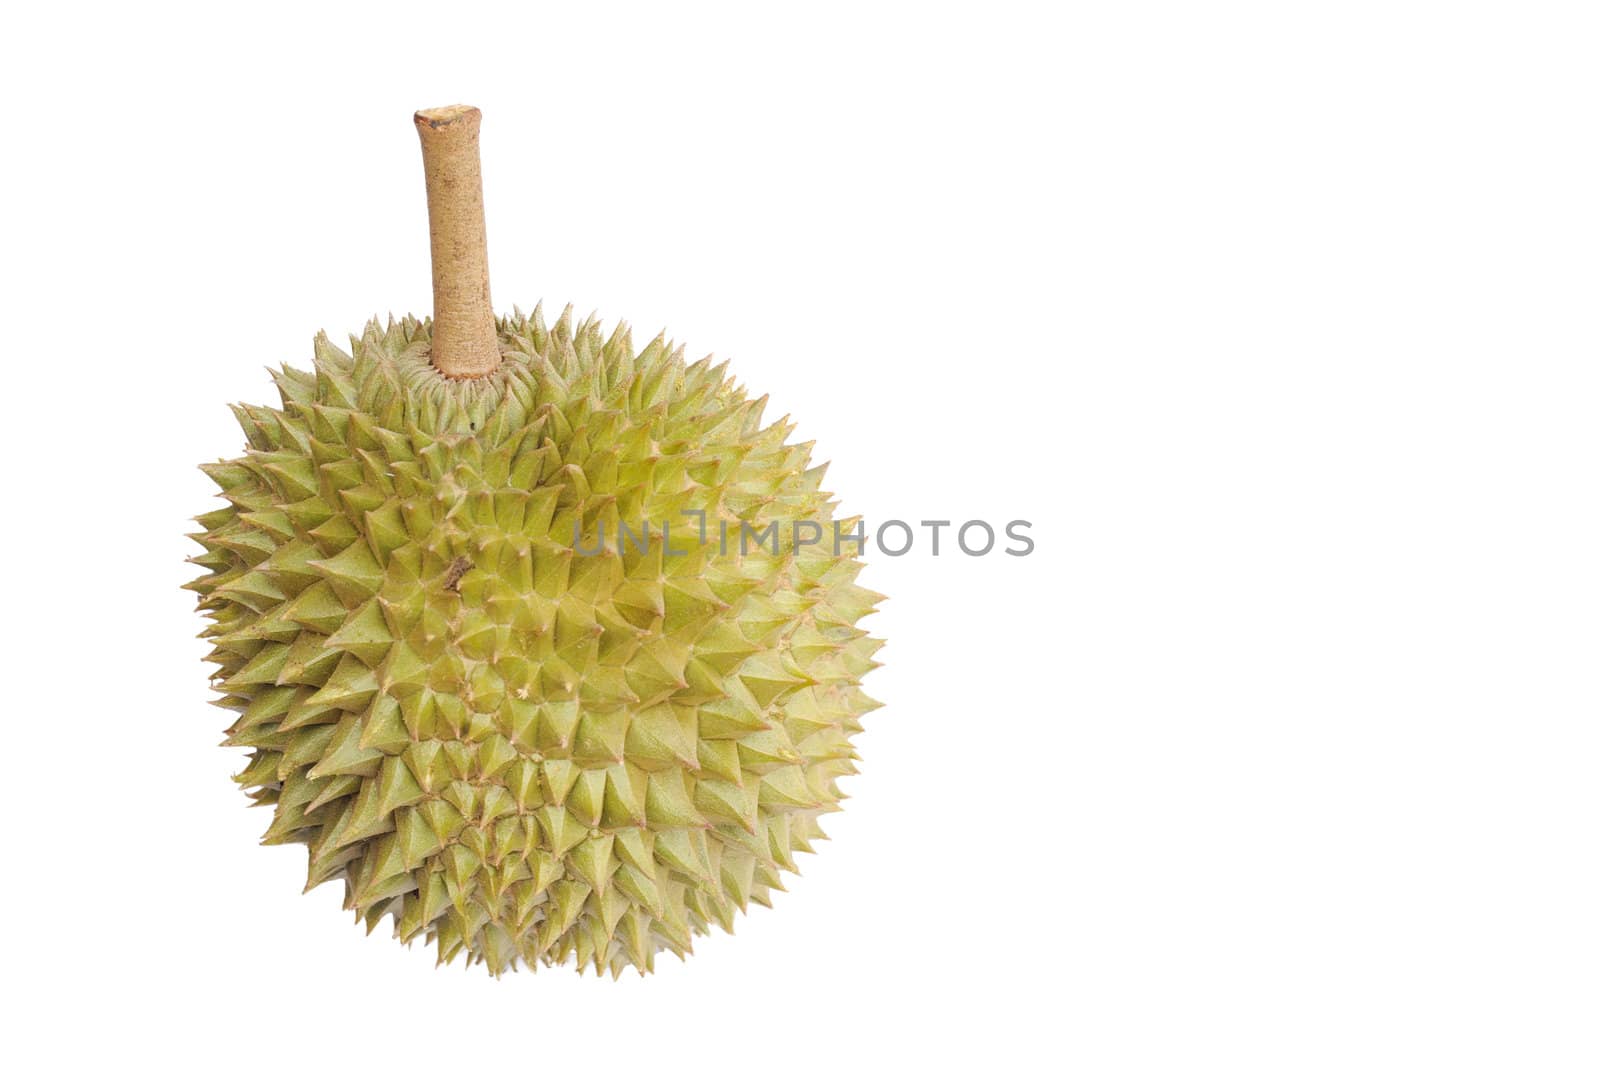 Durian fruit by bigjom